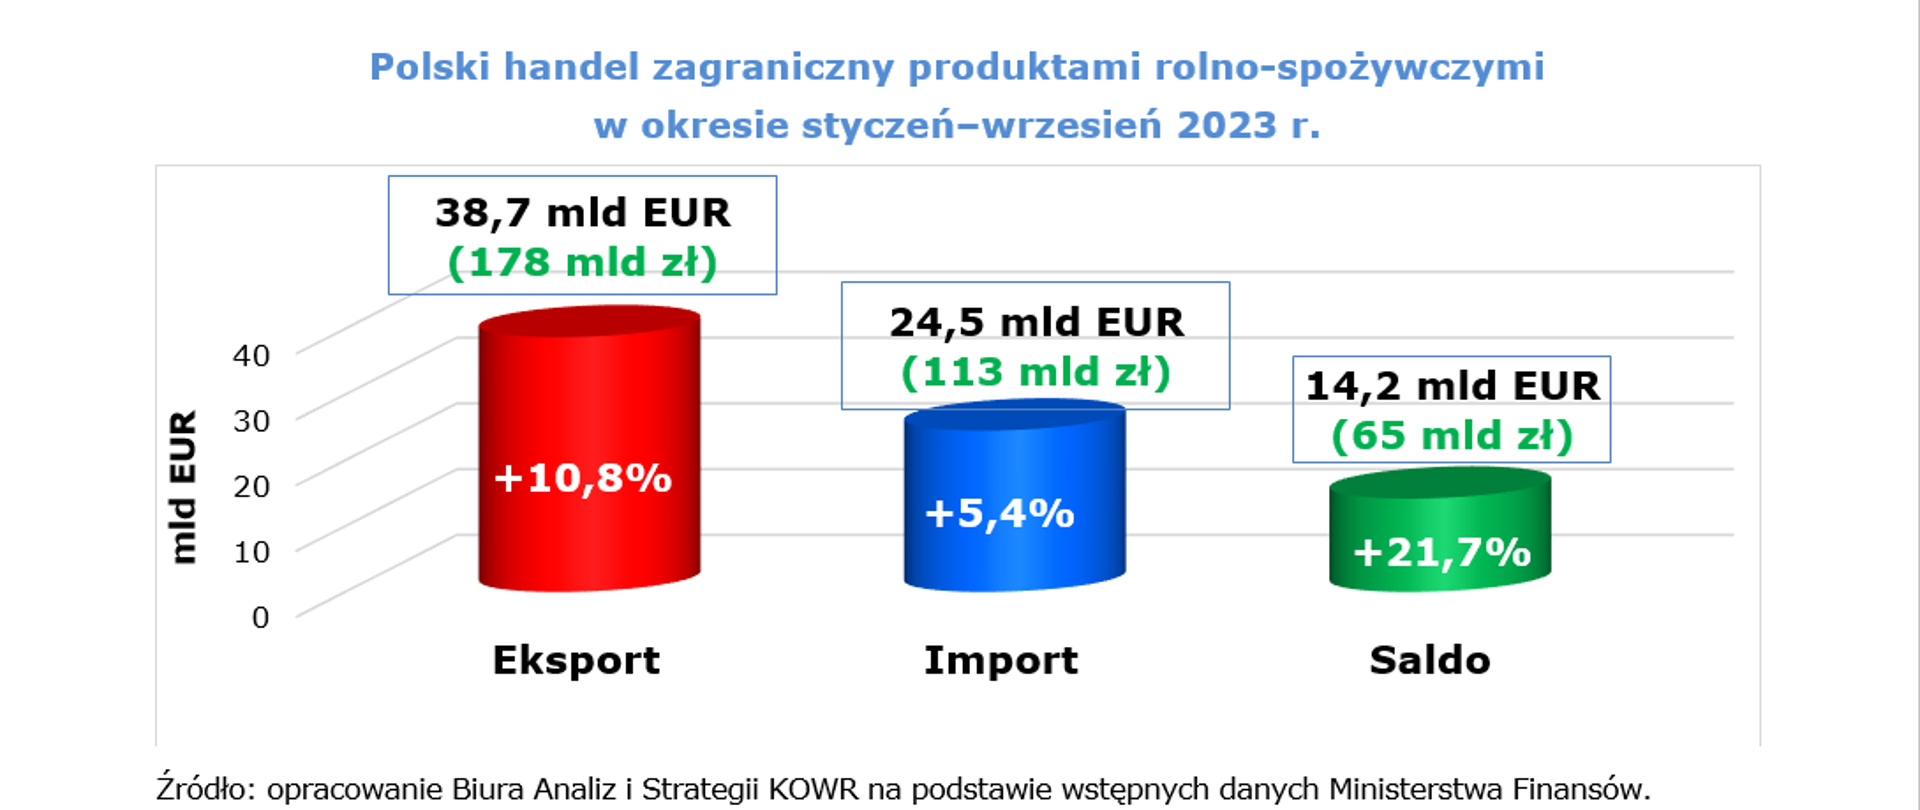 Polski handel zagraniczny produktami rolno-spożywczymi
w okresie styczeń–wrzesień 2023 r.
